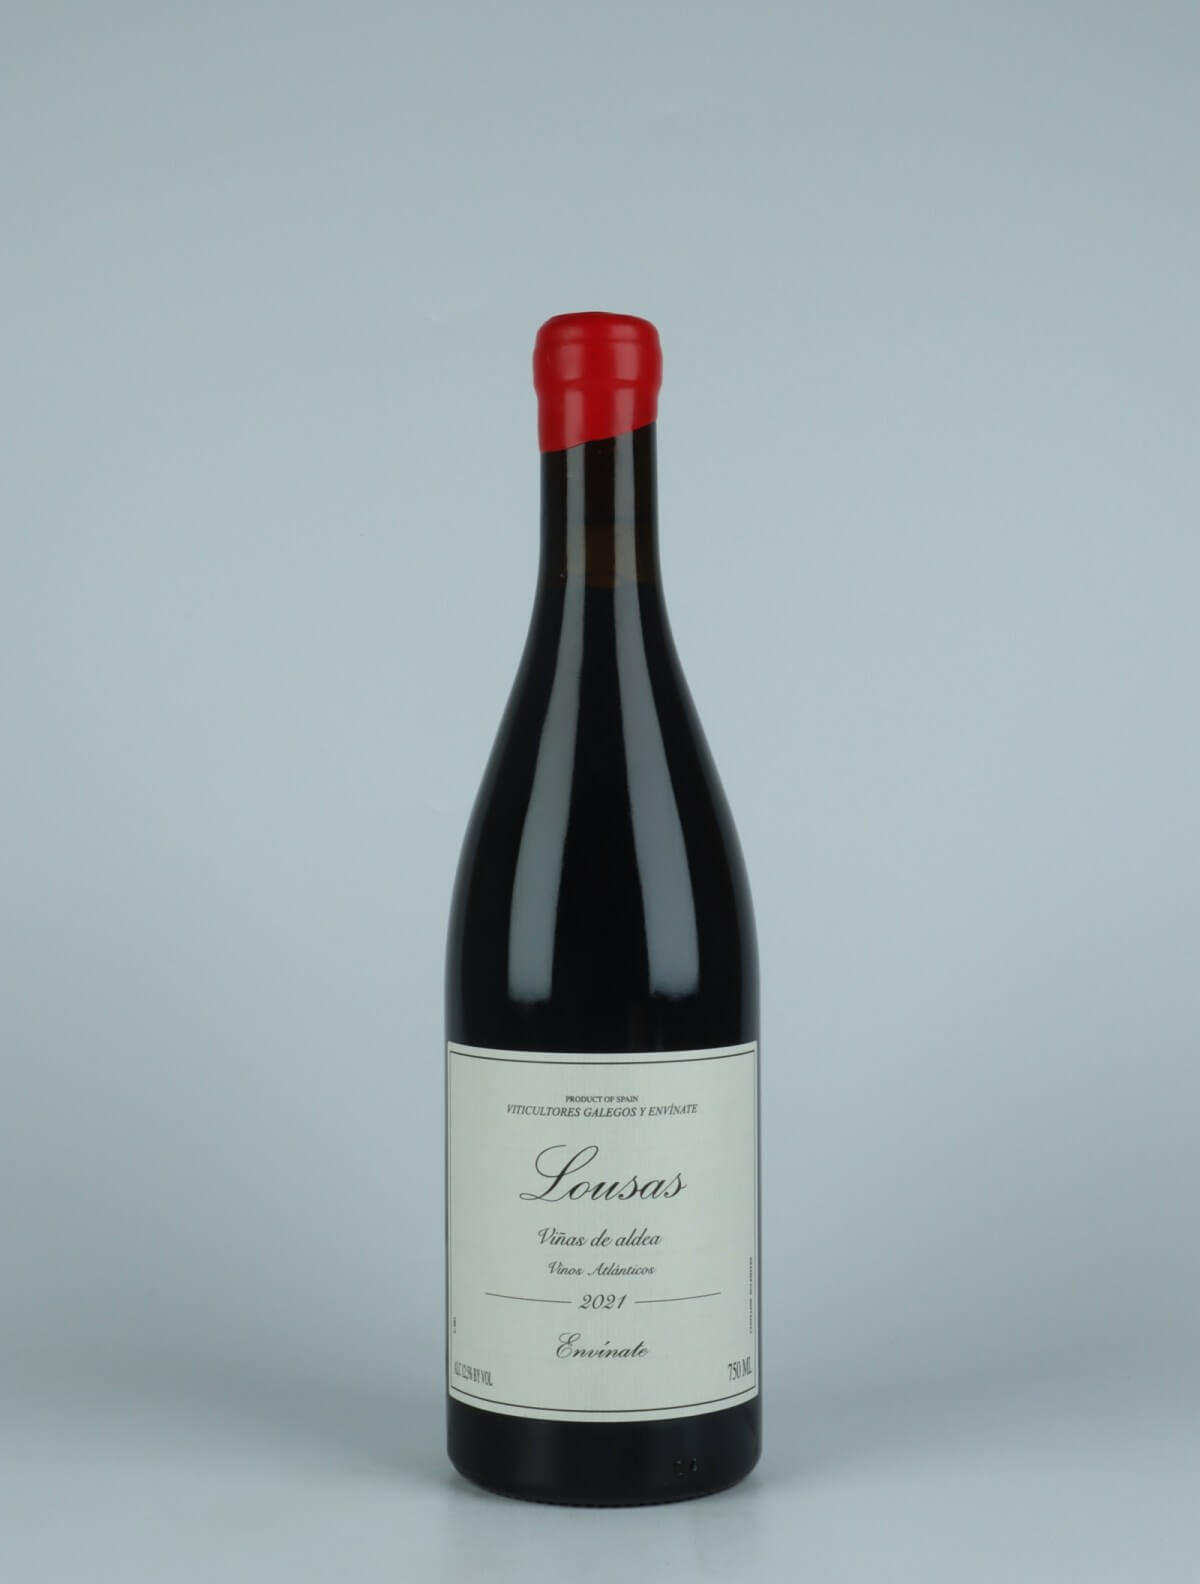 A bottle 2021 Lousas Viñas de Aldea - Ribeira Sacra Red wine from , Ribeira Sacra in Spain